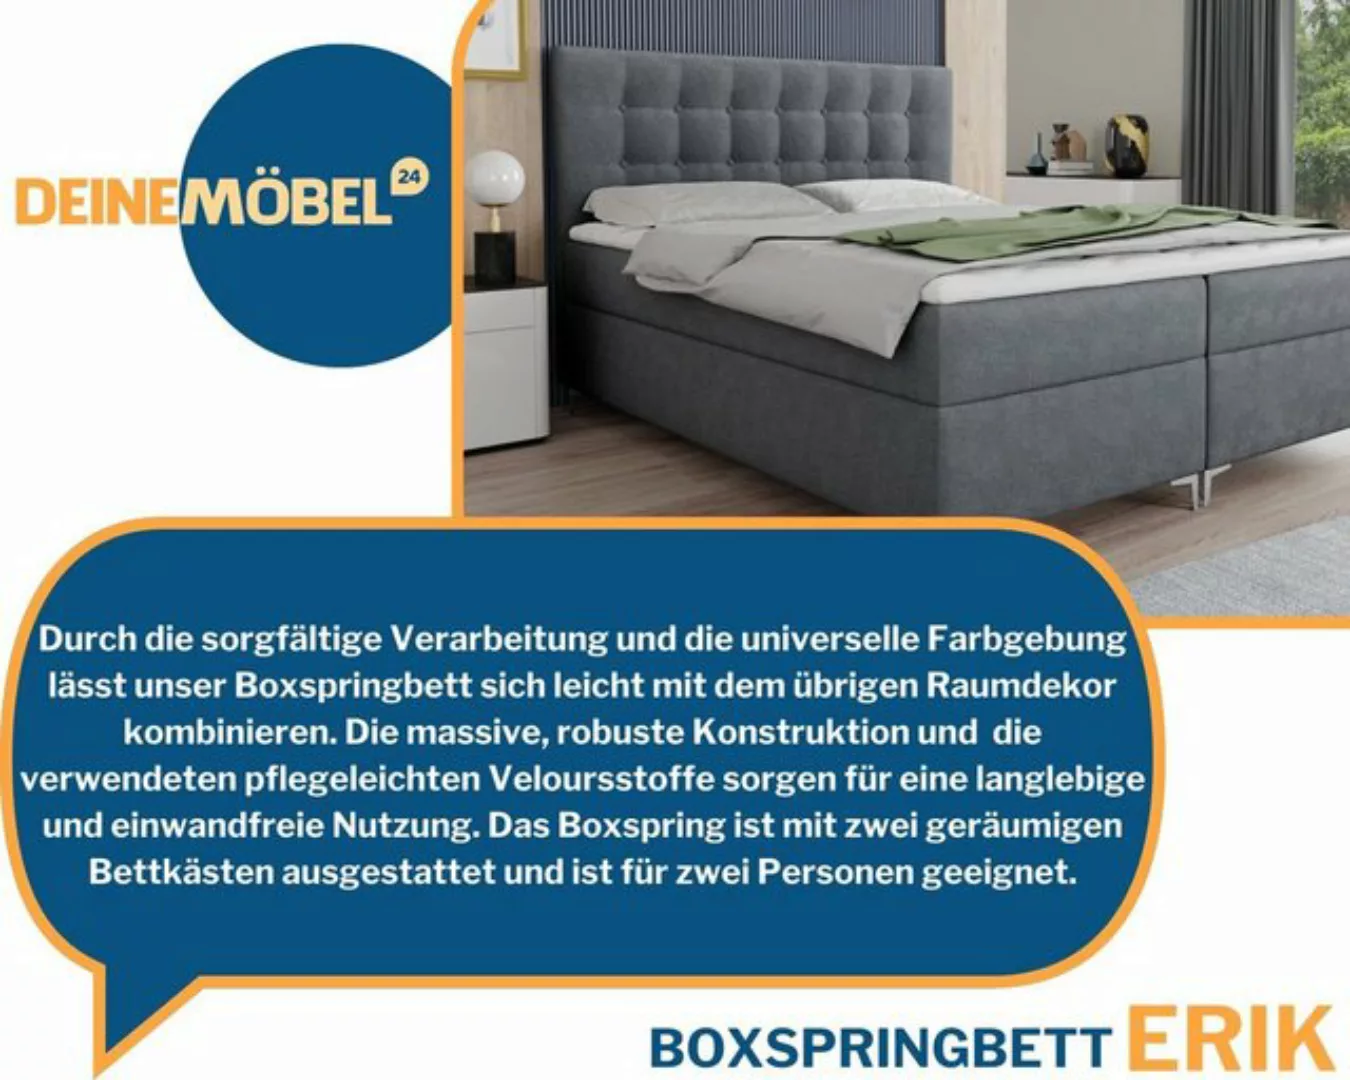 Deine Möbel 24 Boxspringbett Bett ERIK mit Bonell-Federkernmatratze H3 inkl günstig online kaufen